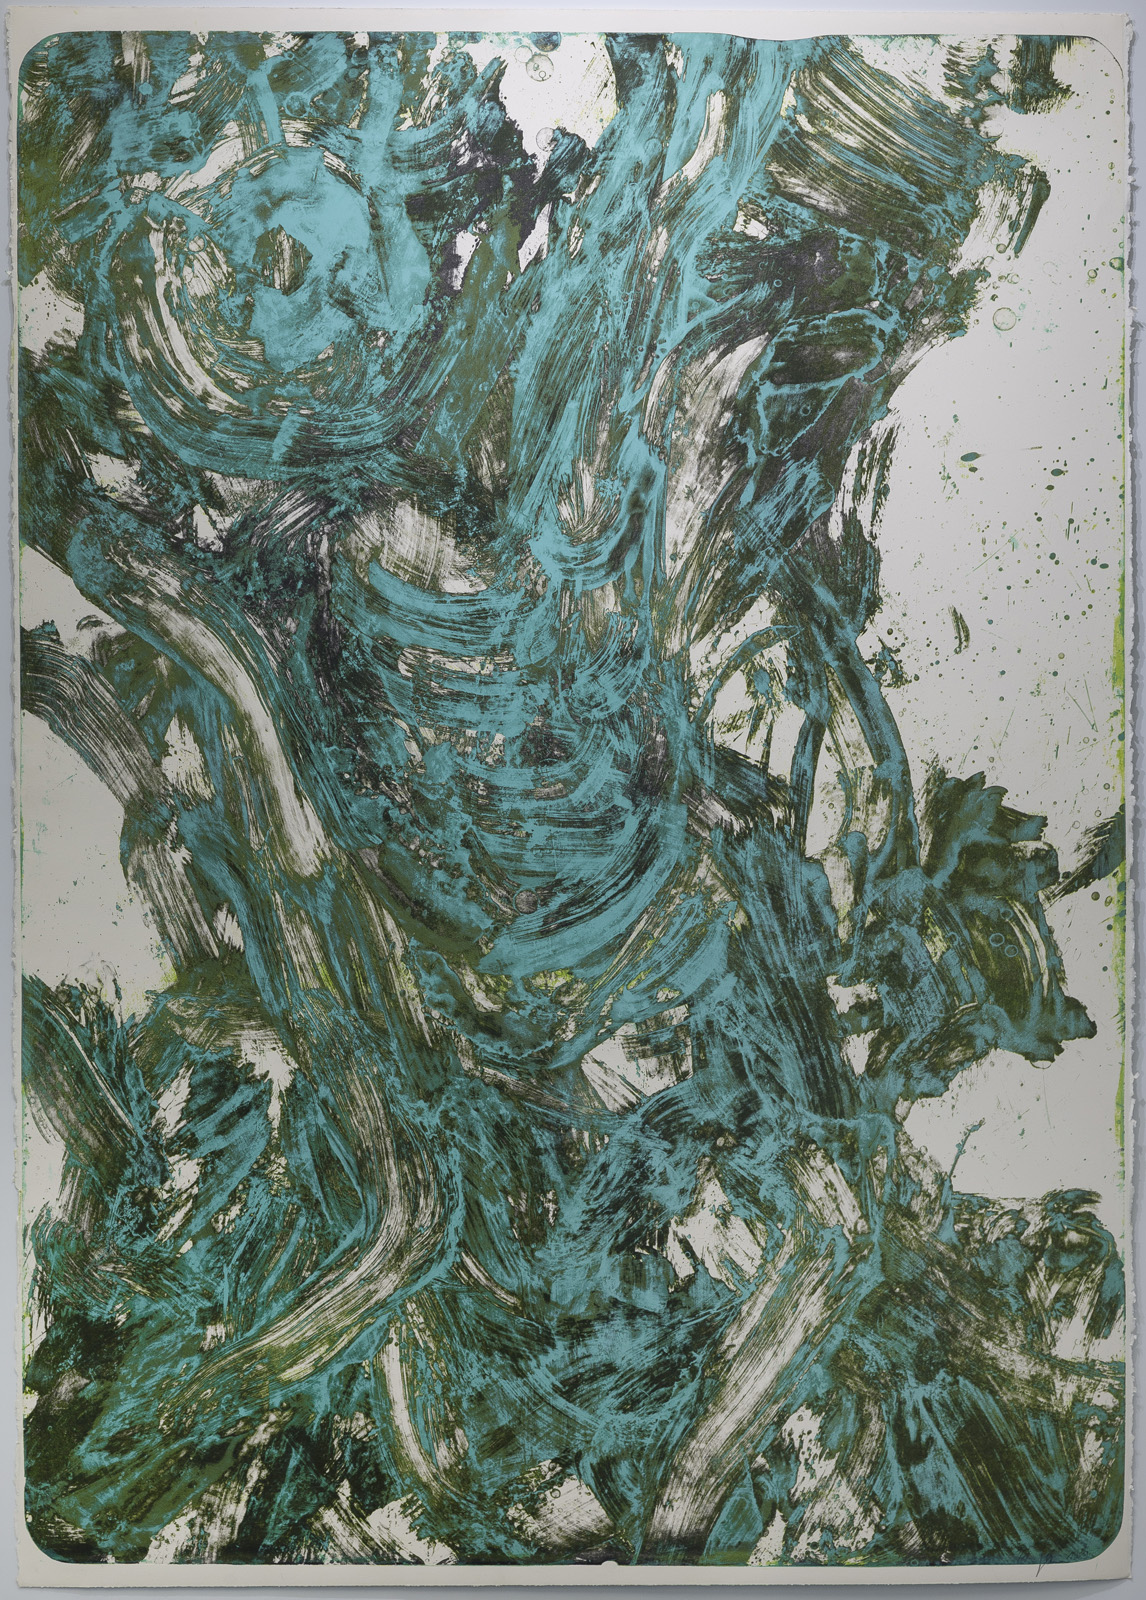 Für Christian, Lithograpie, Unikat, 177 x 124 cm, 1989